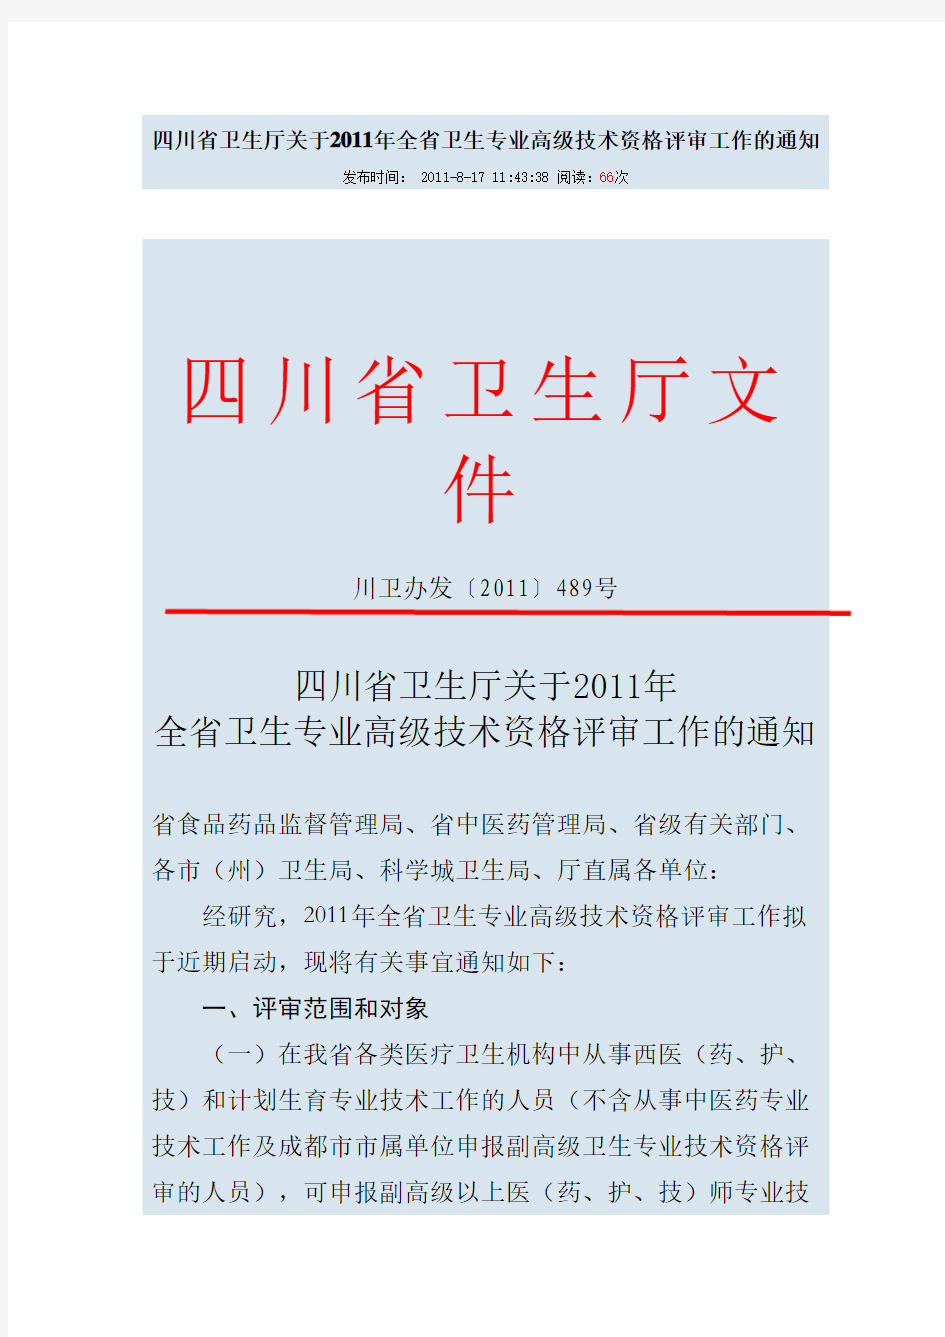 四川省卫生厅关于2011年全省卫生专业高级技术资格评审工作的通知